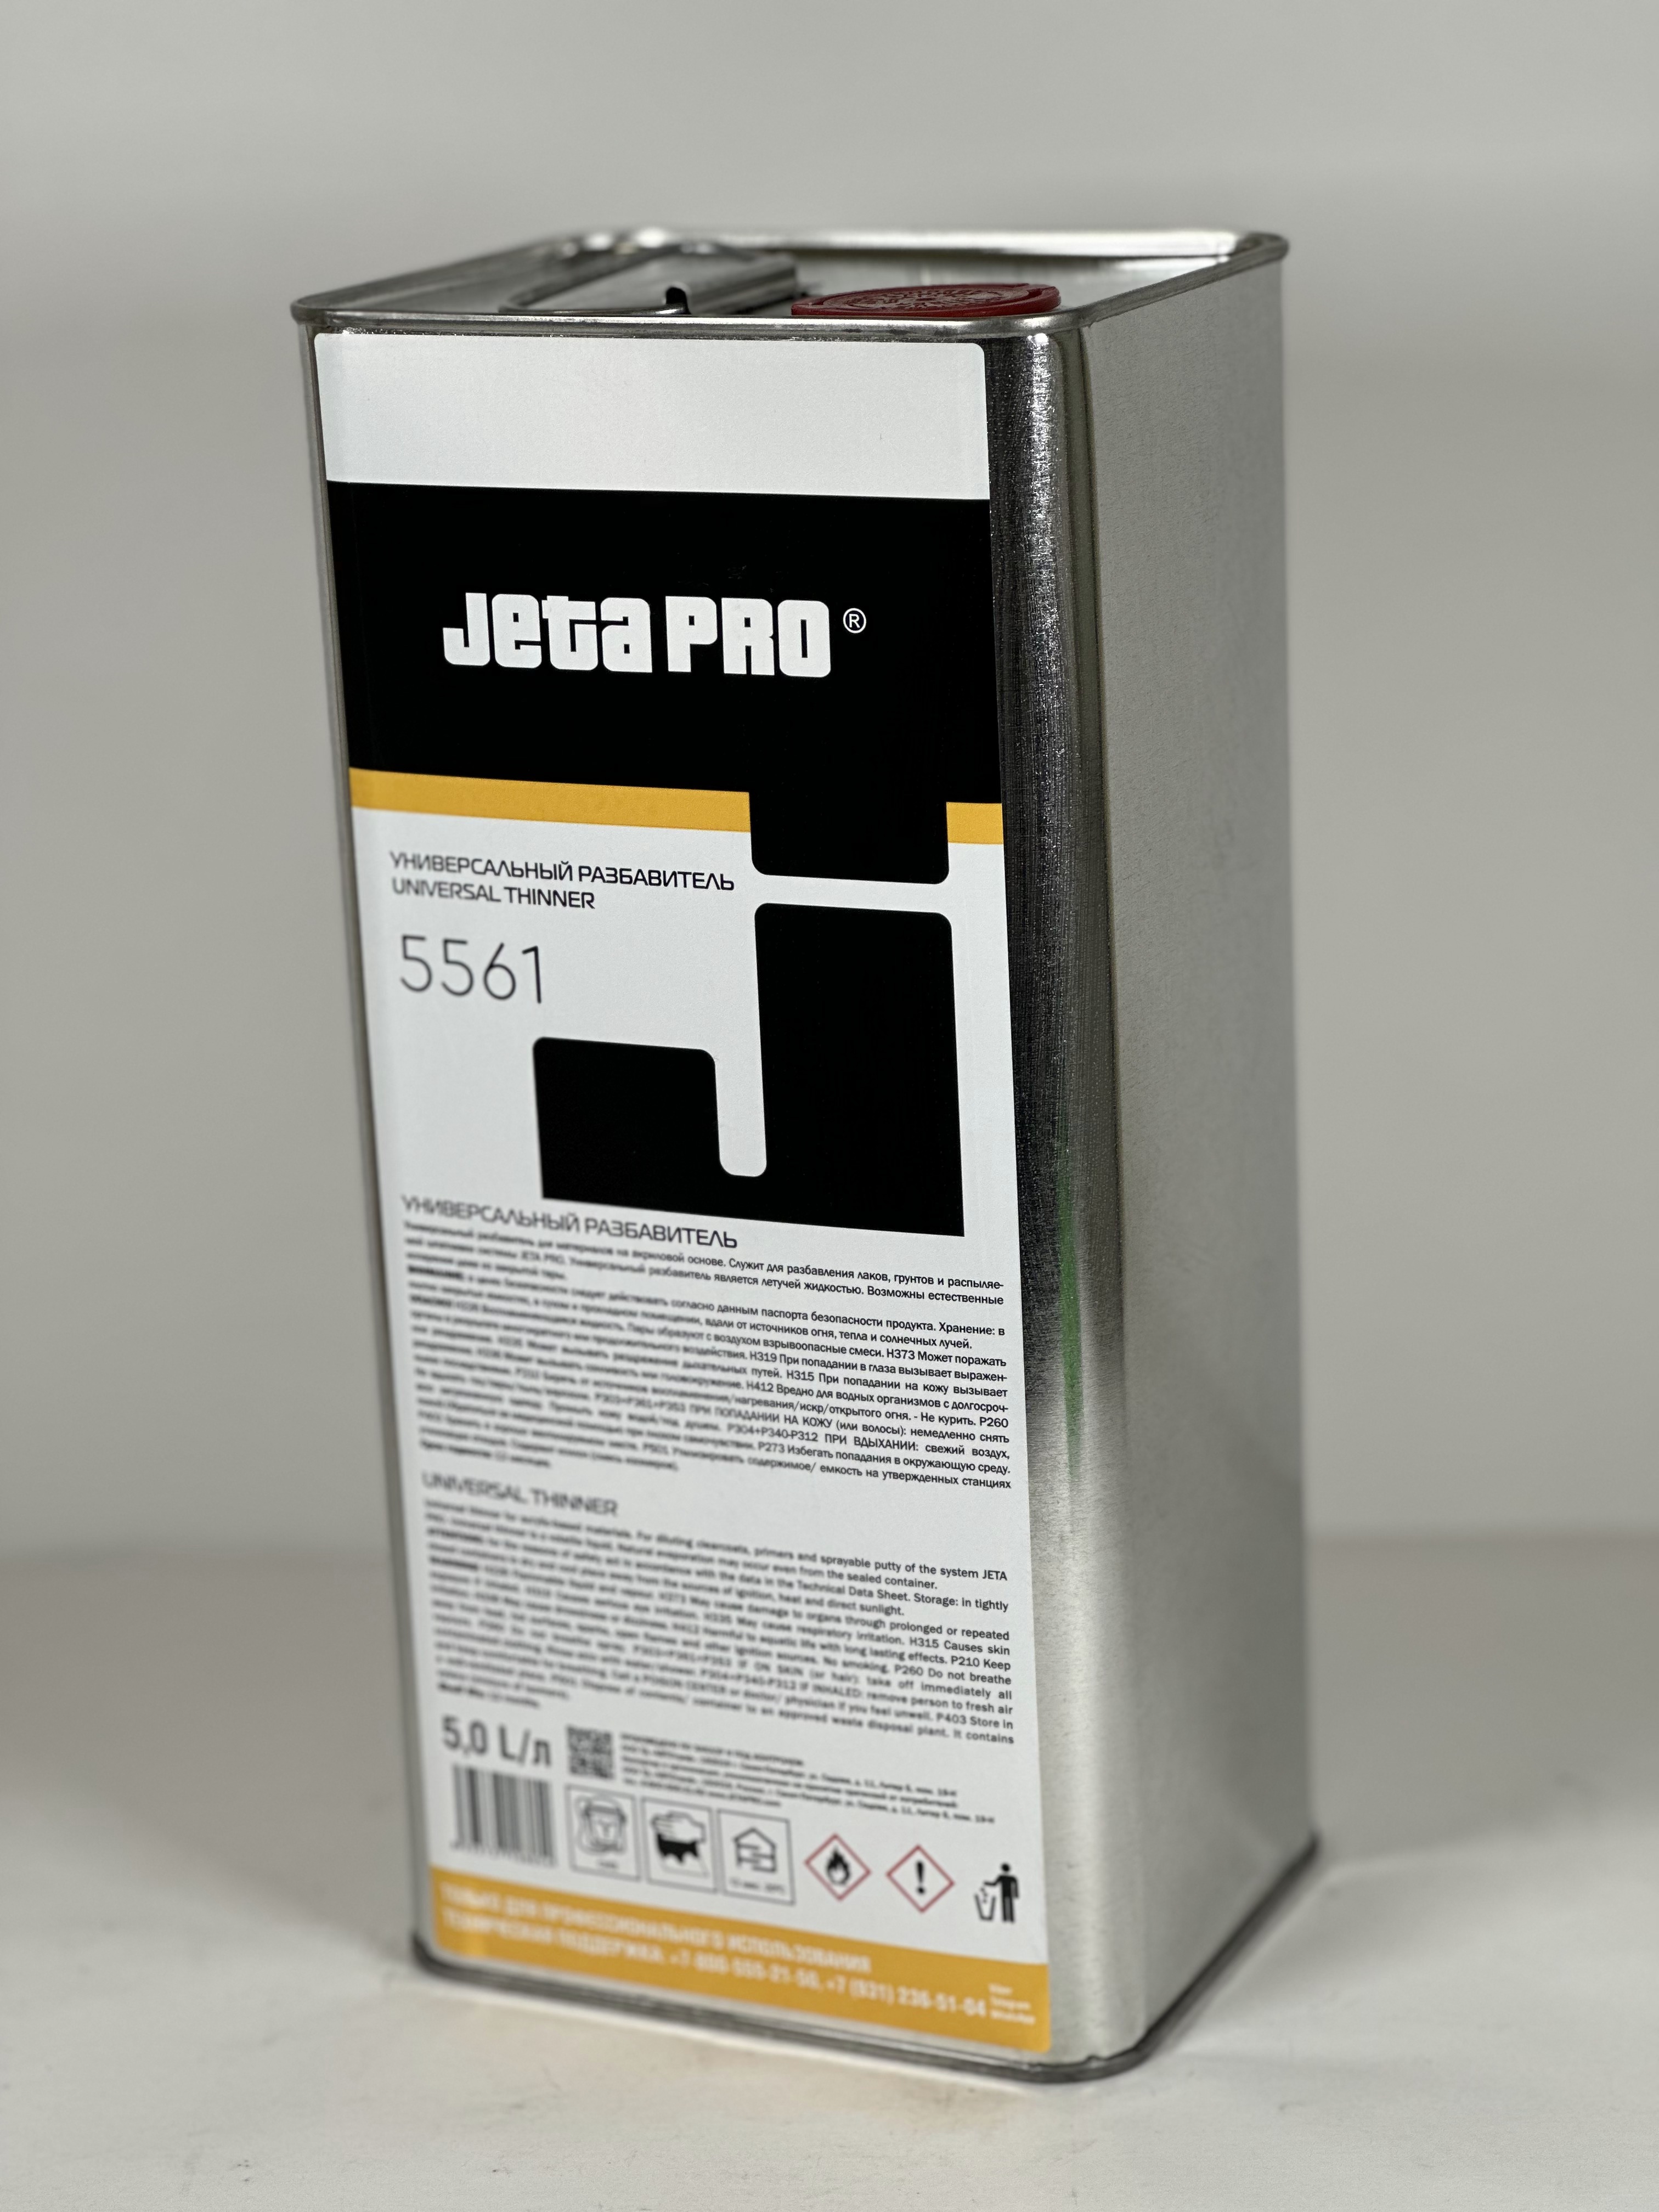 Разбавитель 5561 для акриловых продуктов универсальный 5 л Jeta Pro